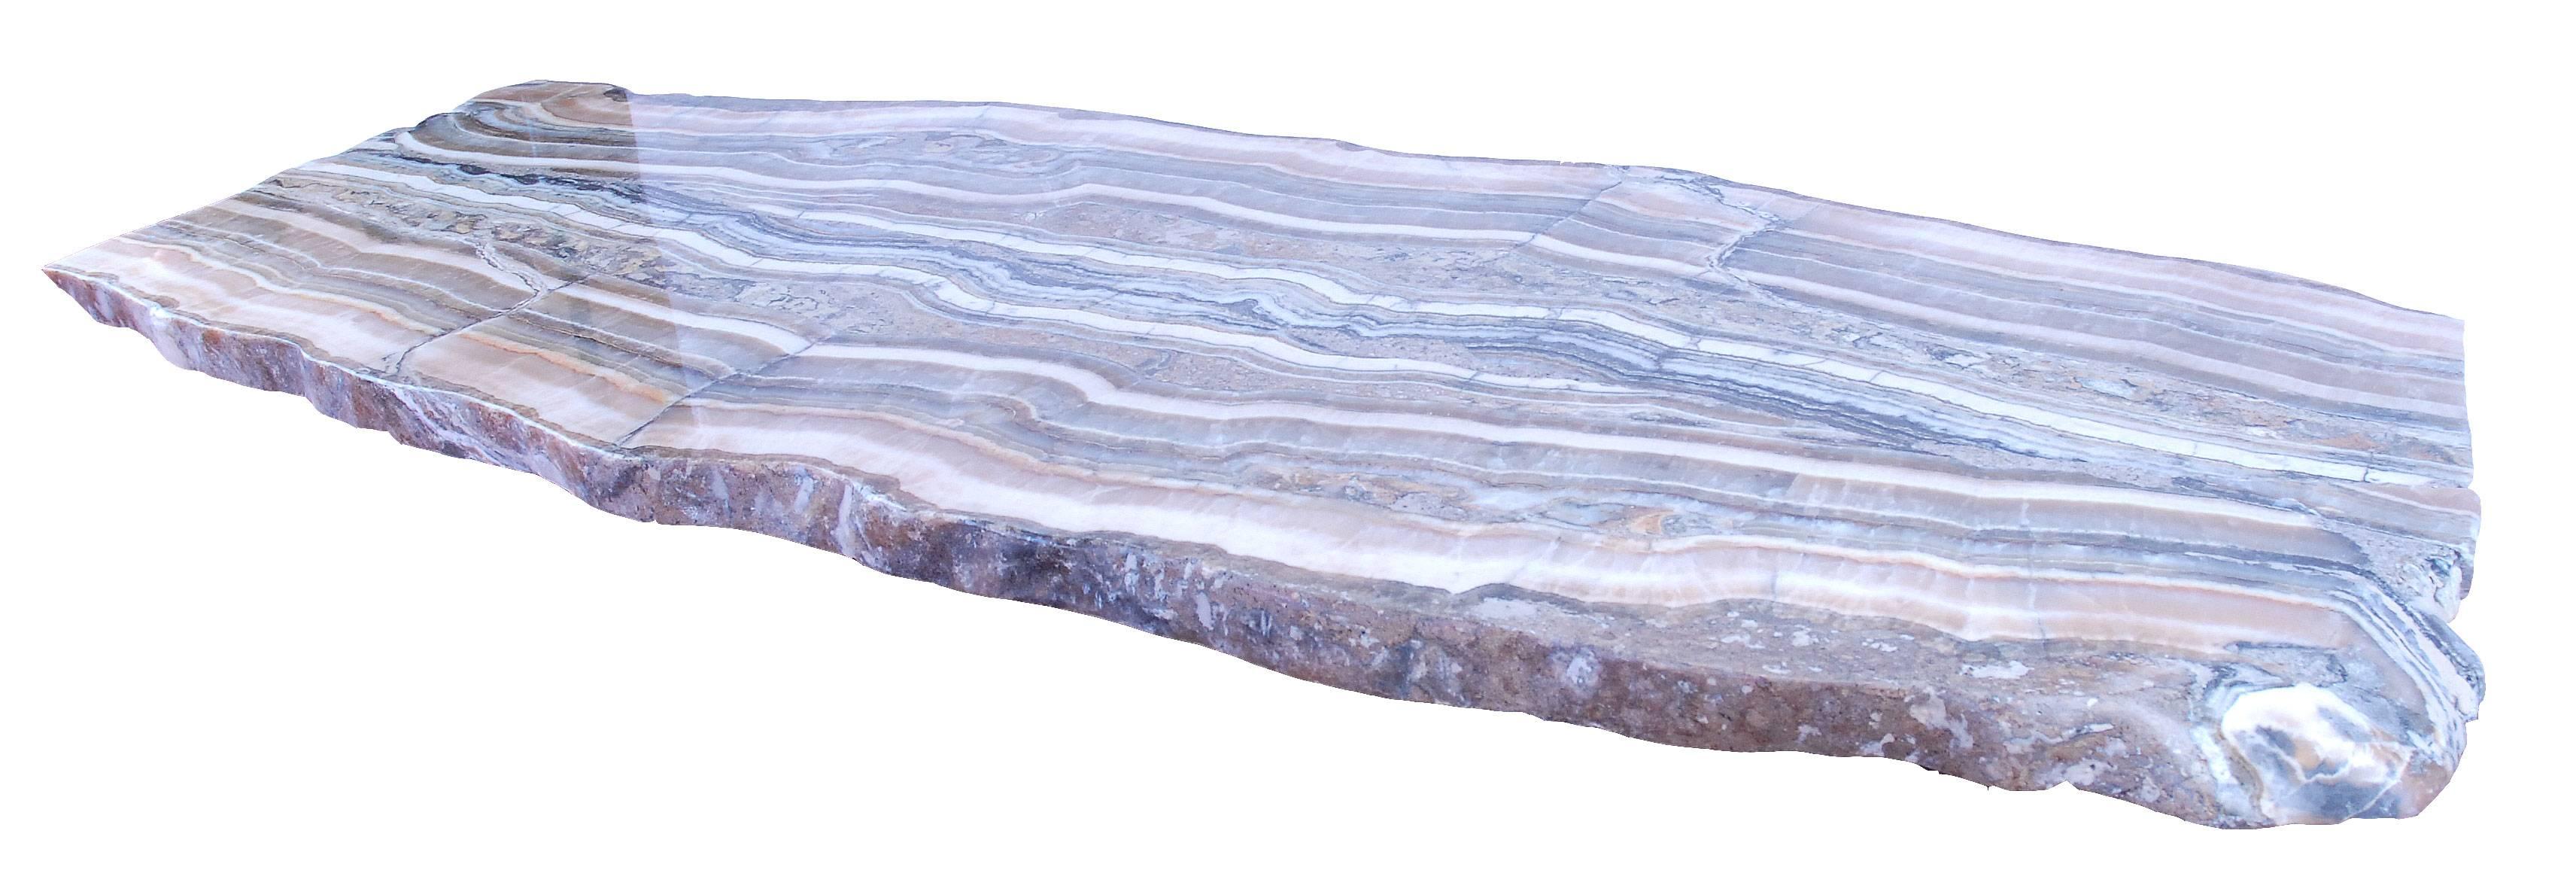 Petrified wood slab 1.65